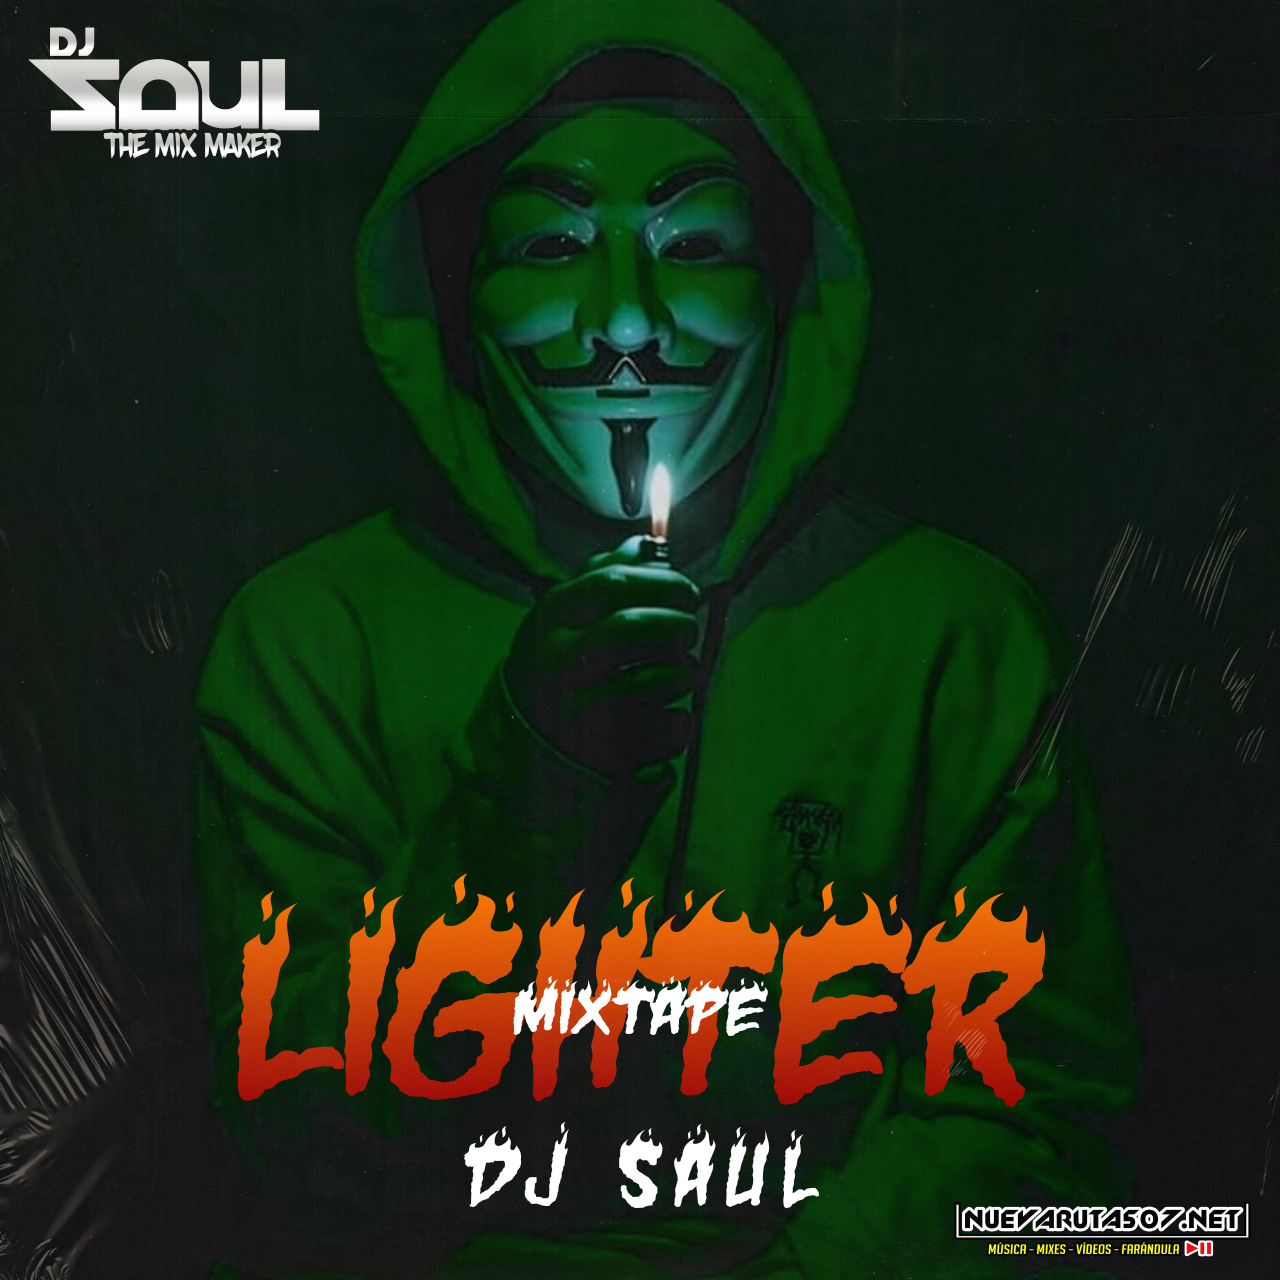 Lighter Mixtape 2021 - @djsaul_oficial.mp3